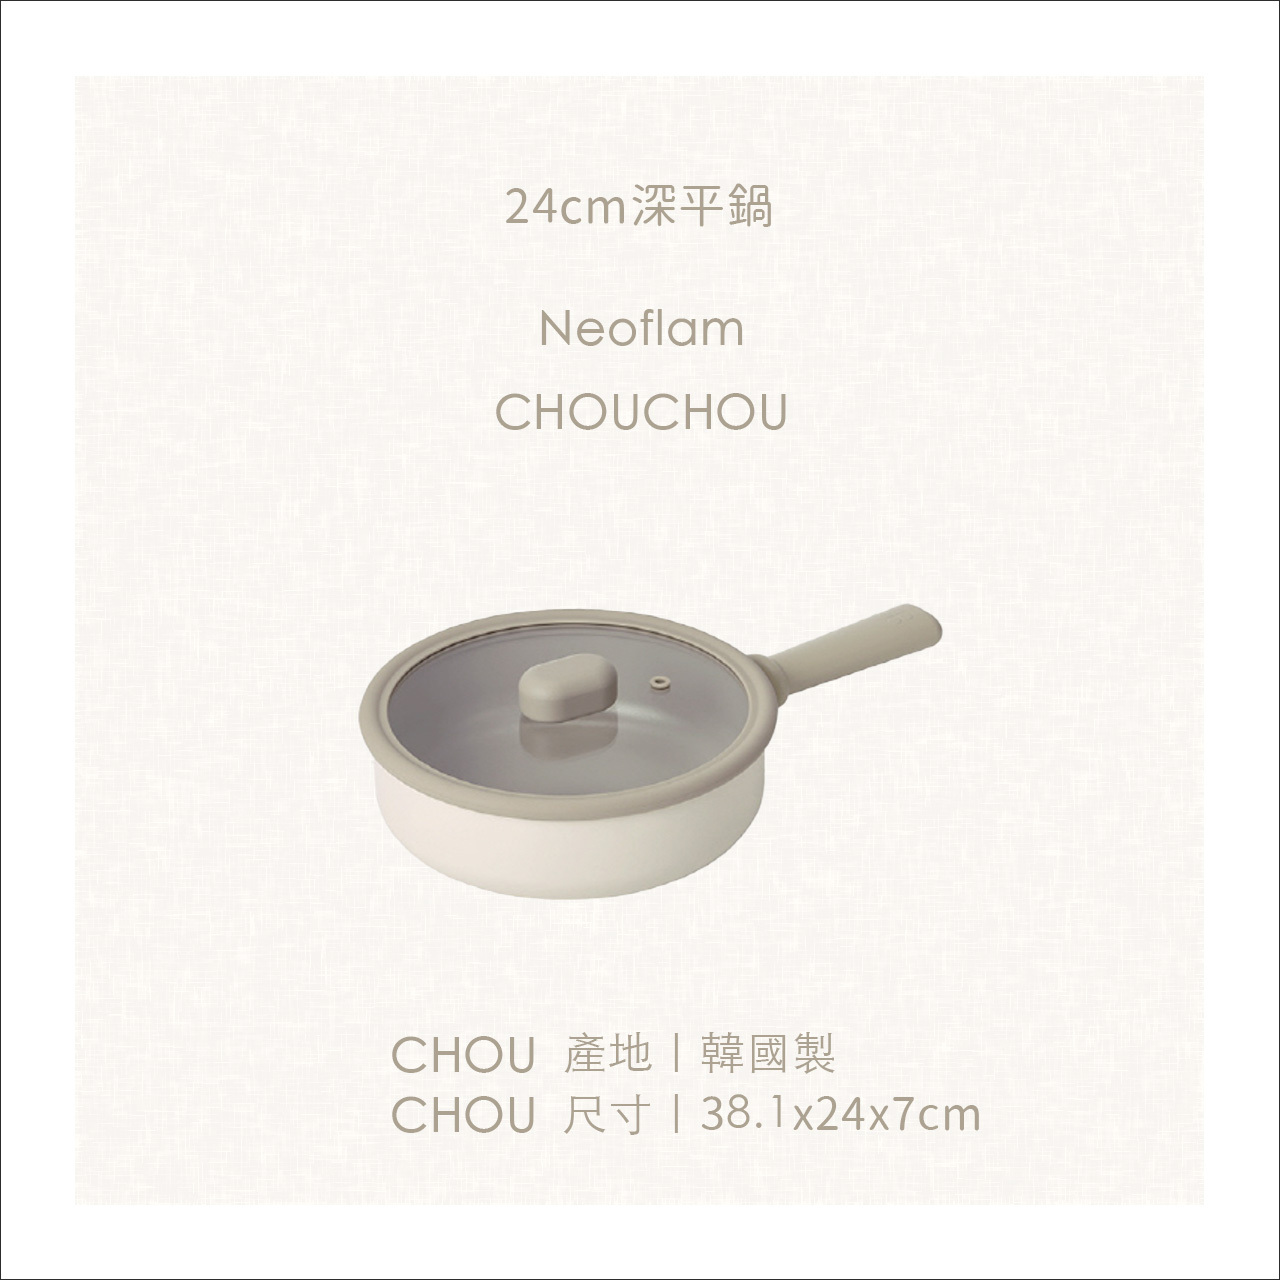 chouchou尺寸-24cmwok